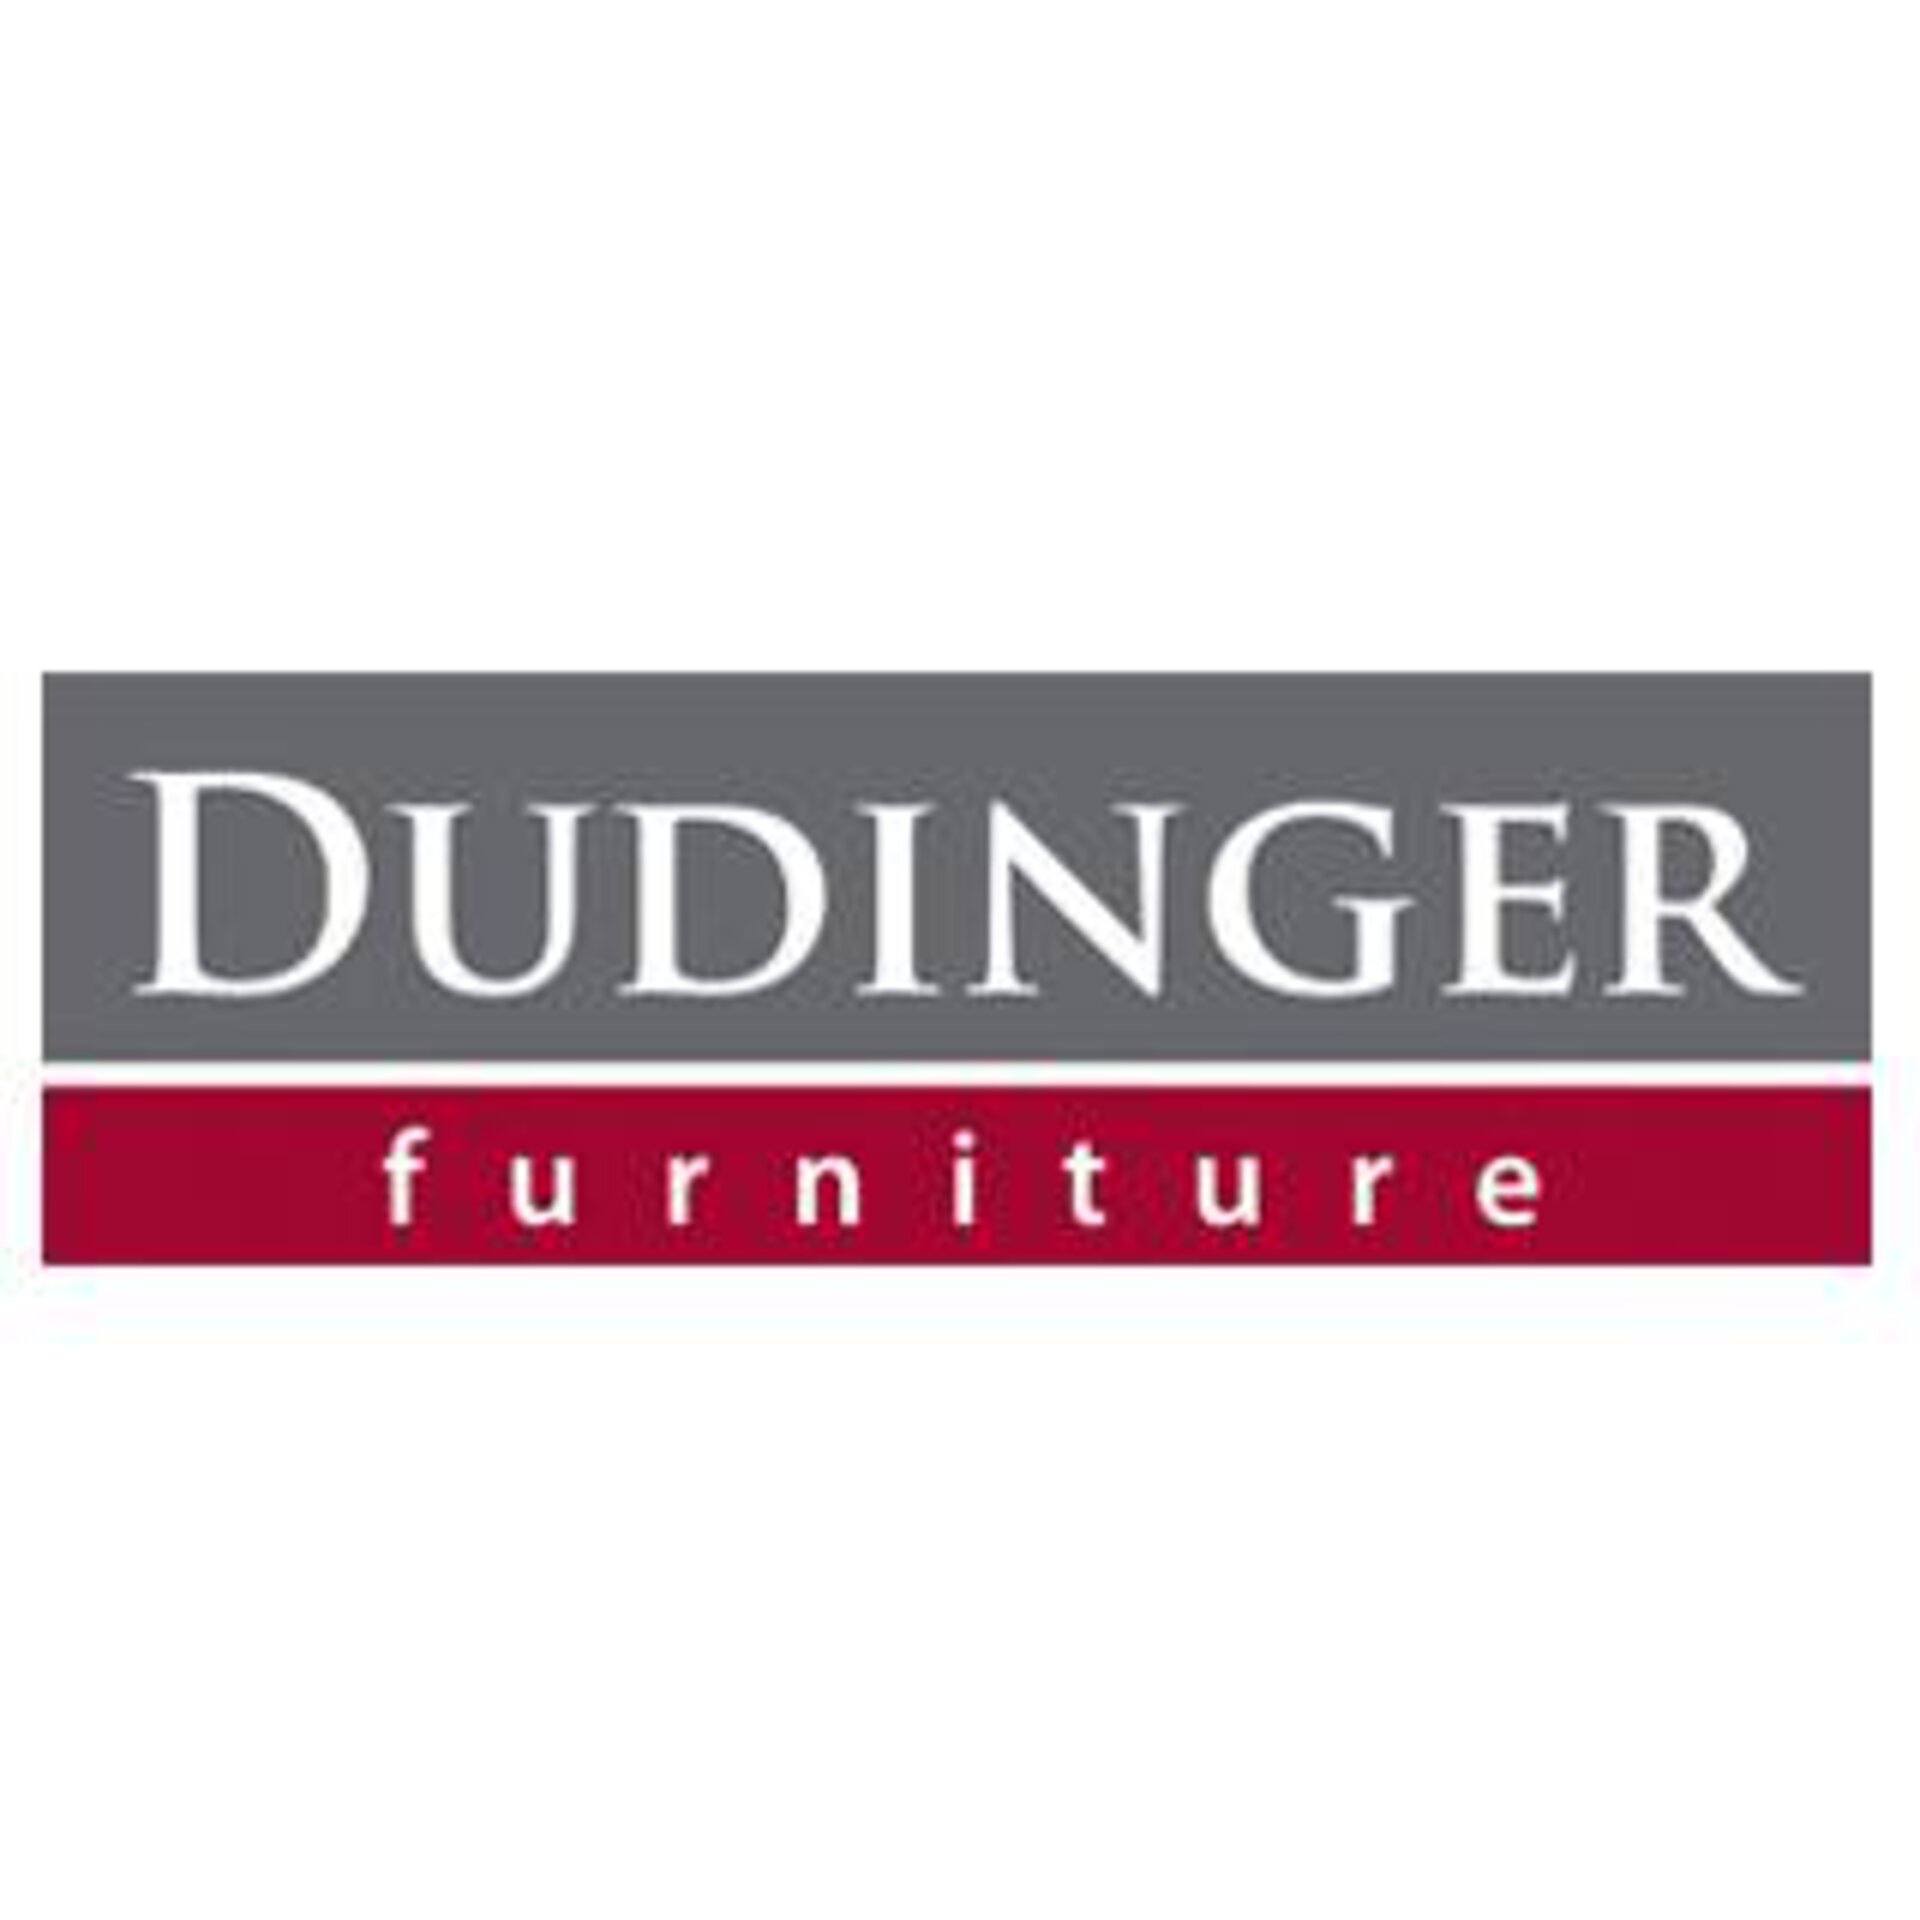 DUDINGER-furniture Logo